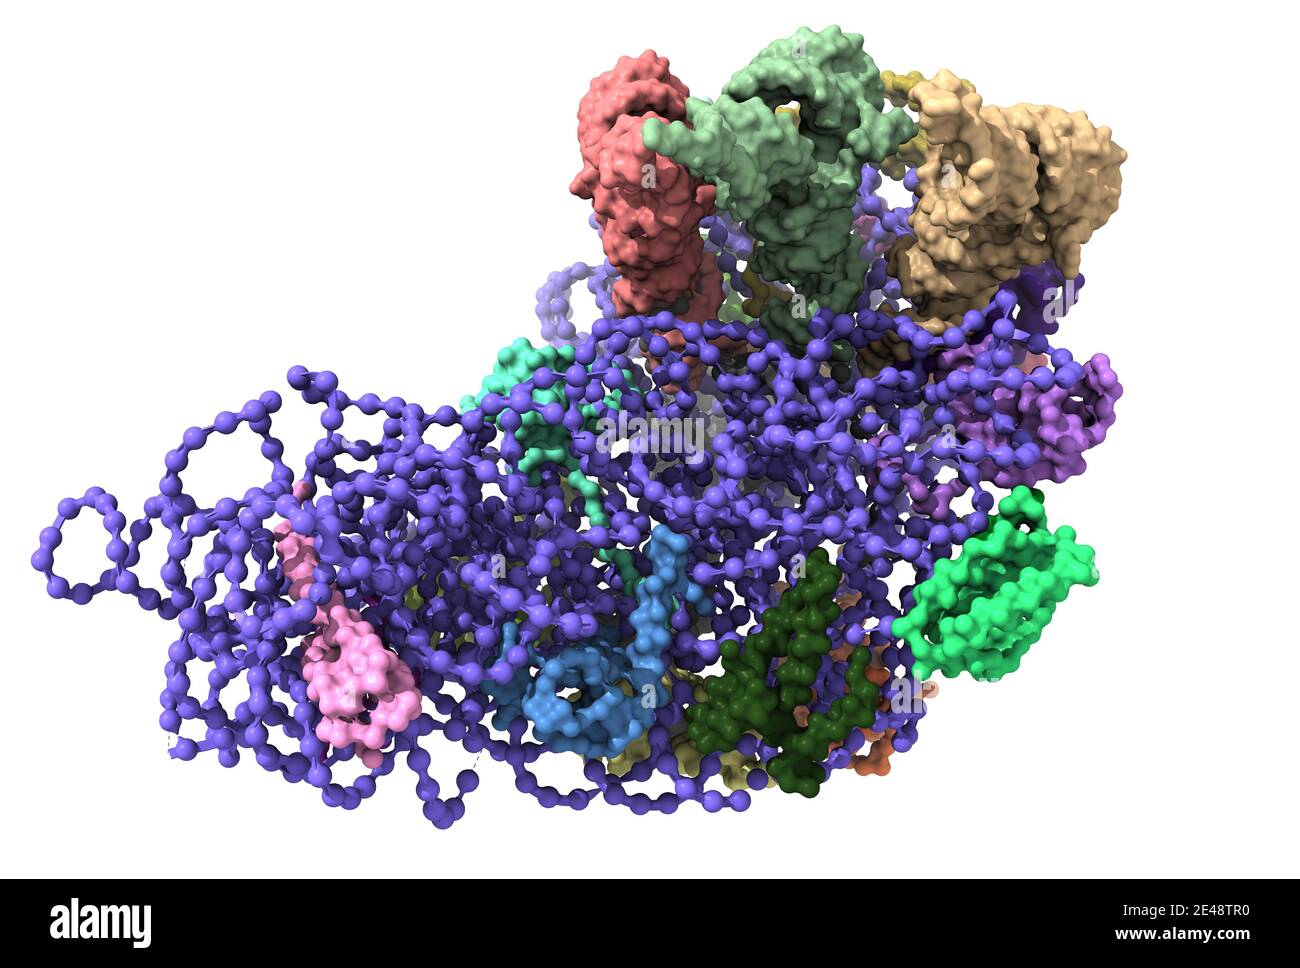 La structure du ribosome de Thermus thermophilus montrant l'ARN du ribosome 30S (bleu), trois ARNt (haut) et les protéines ribosomiques. Banque D'Images